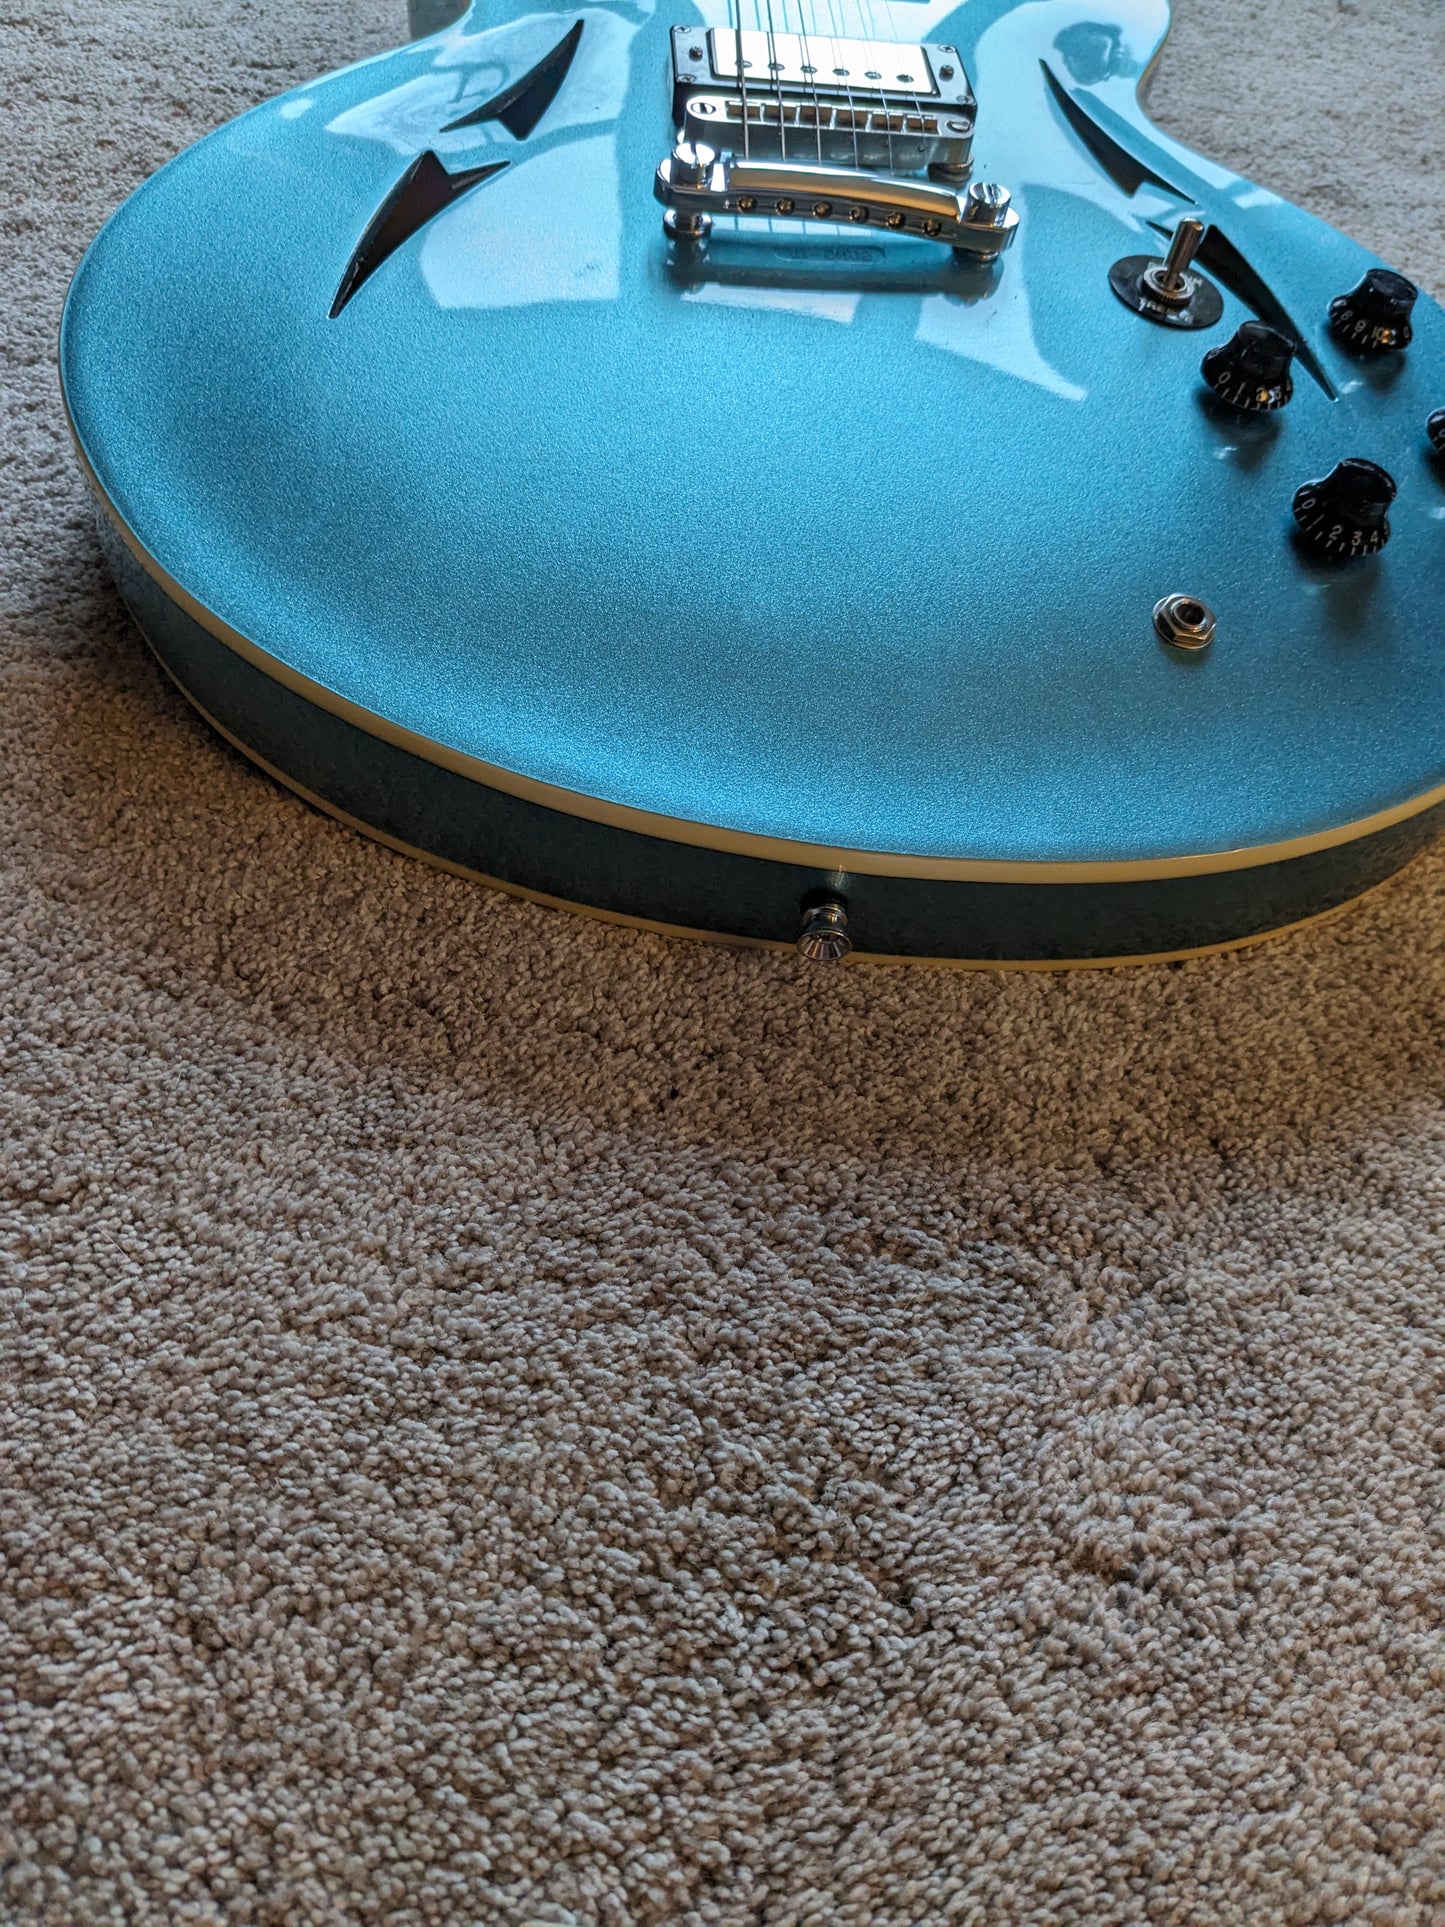 Vintage VSA-540 - 2015 Pelham Blue - Gibson Burstbucker 2 & 3